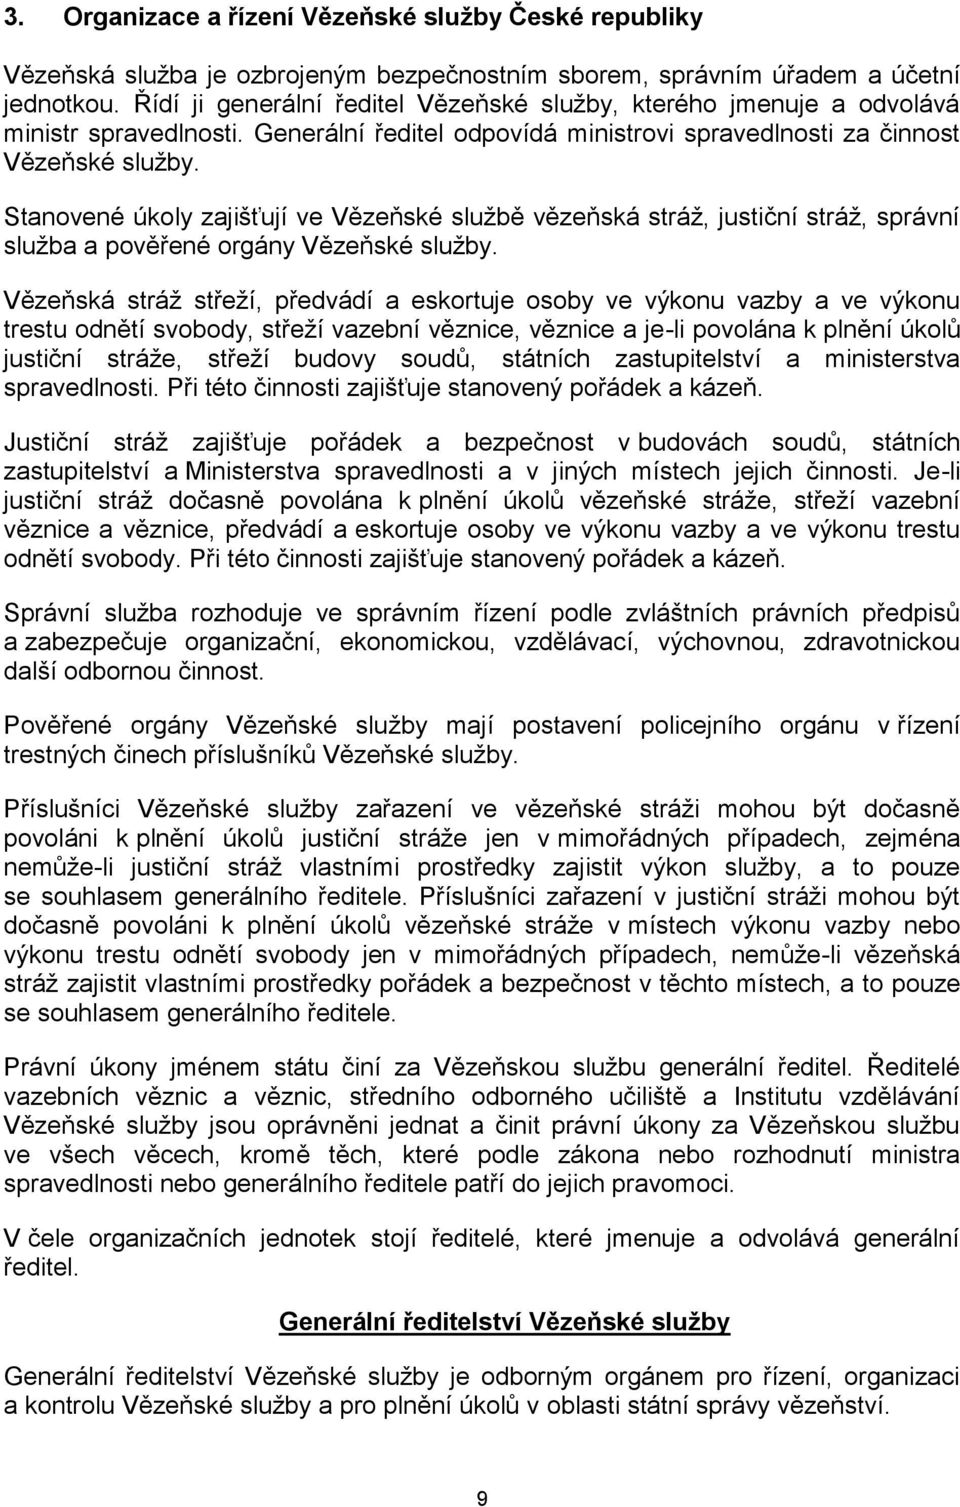 Stanovené úkoly zajišťují ve Vězeňské sluţbě vězeňská stráţ, justiční stráţ, správní sluţba a pověřené orgány Vězeňské sluţby.